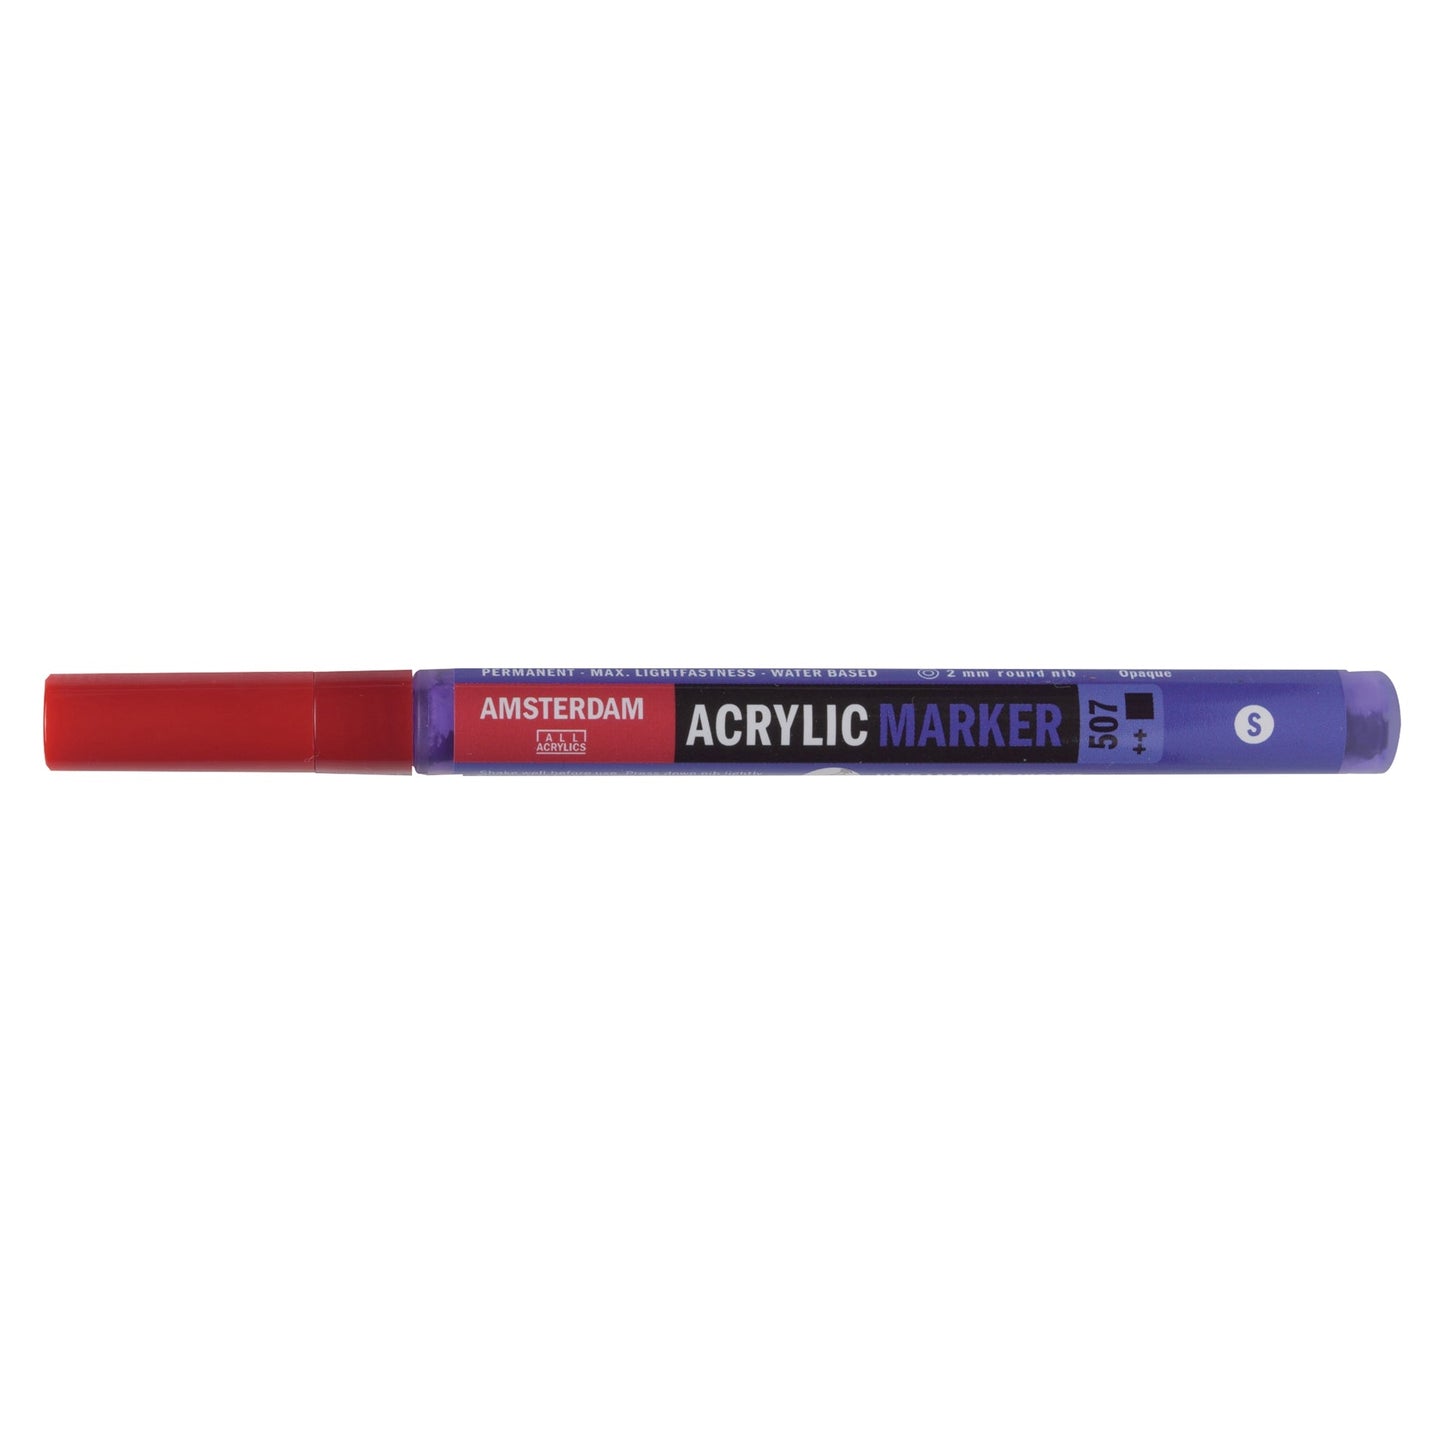 Amsterdam Acrylic Marker 507 Ultramarine Violet - Small 2mm Round Nib - theartshop.com.au